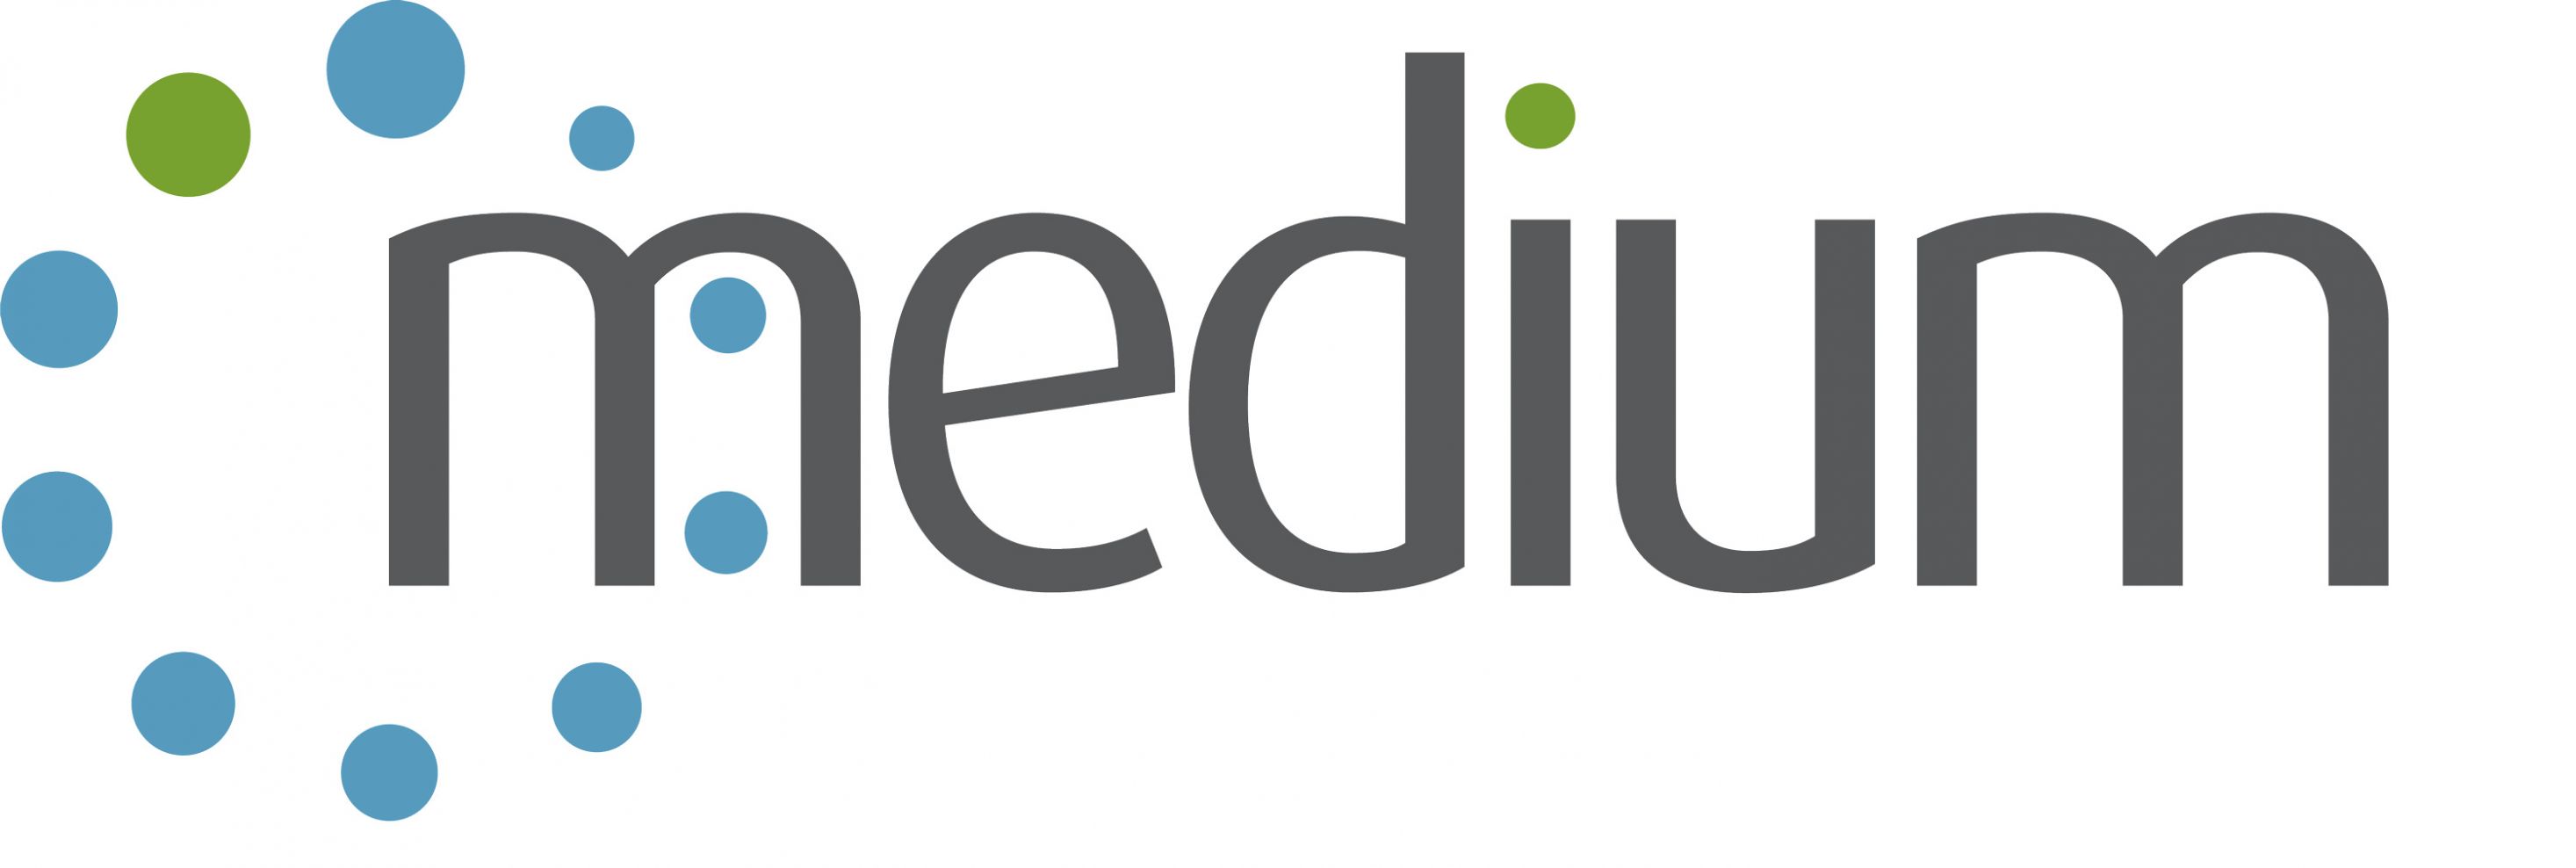 Medium UK Ltd Logo